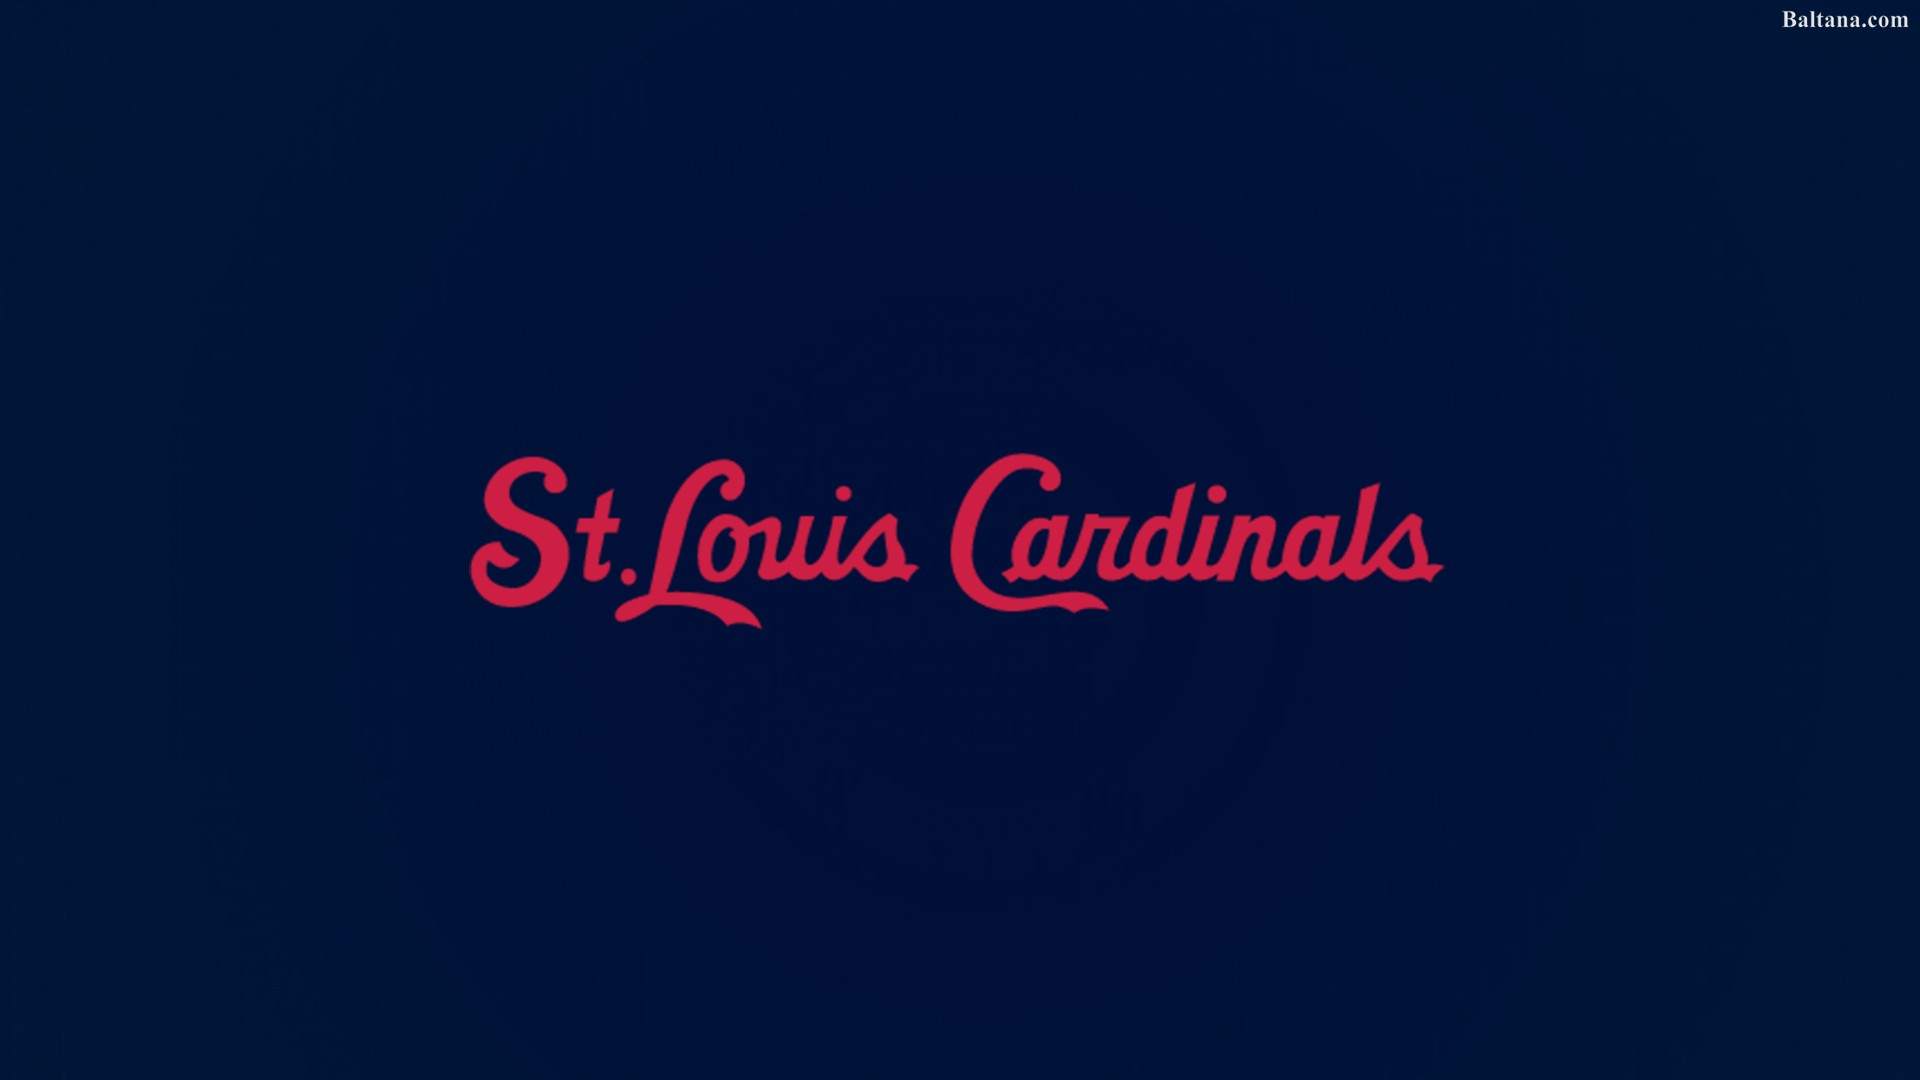 St Louis Cardinals Desktop Wallpaper Baltana